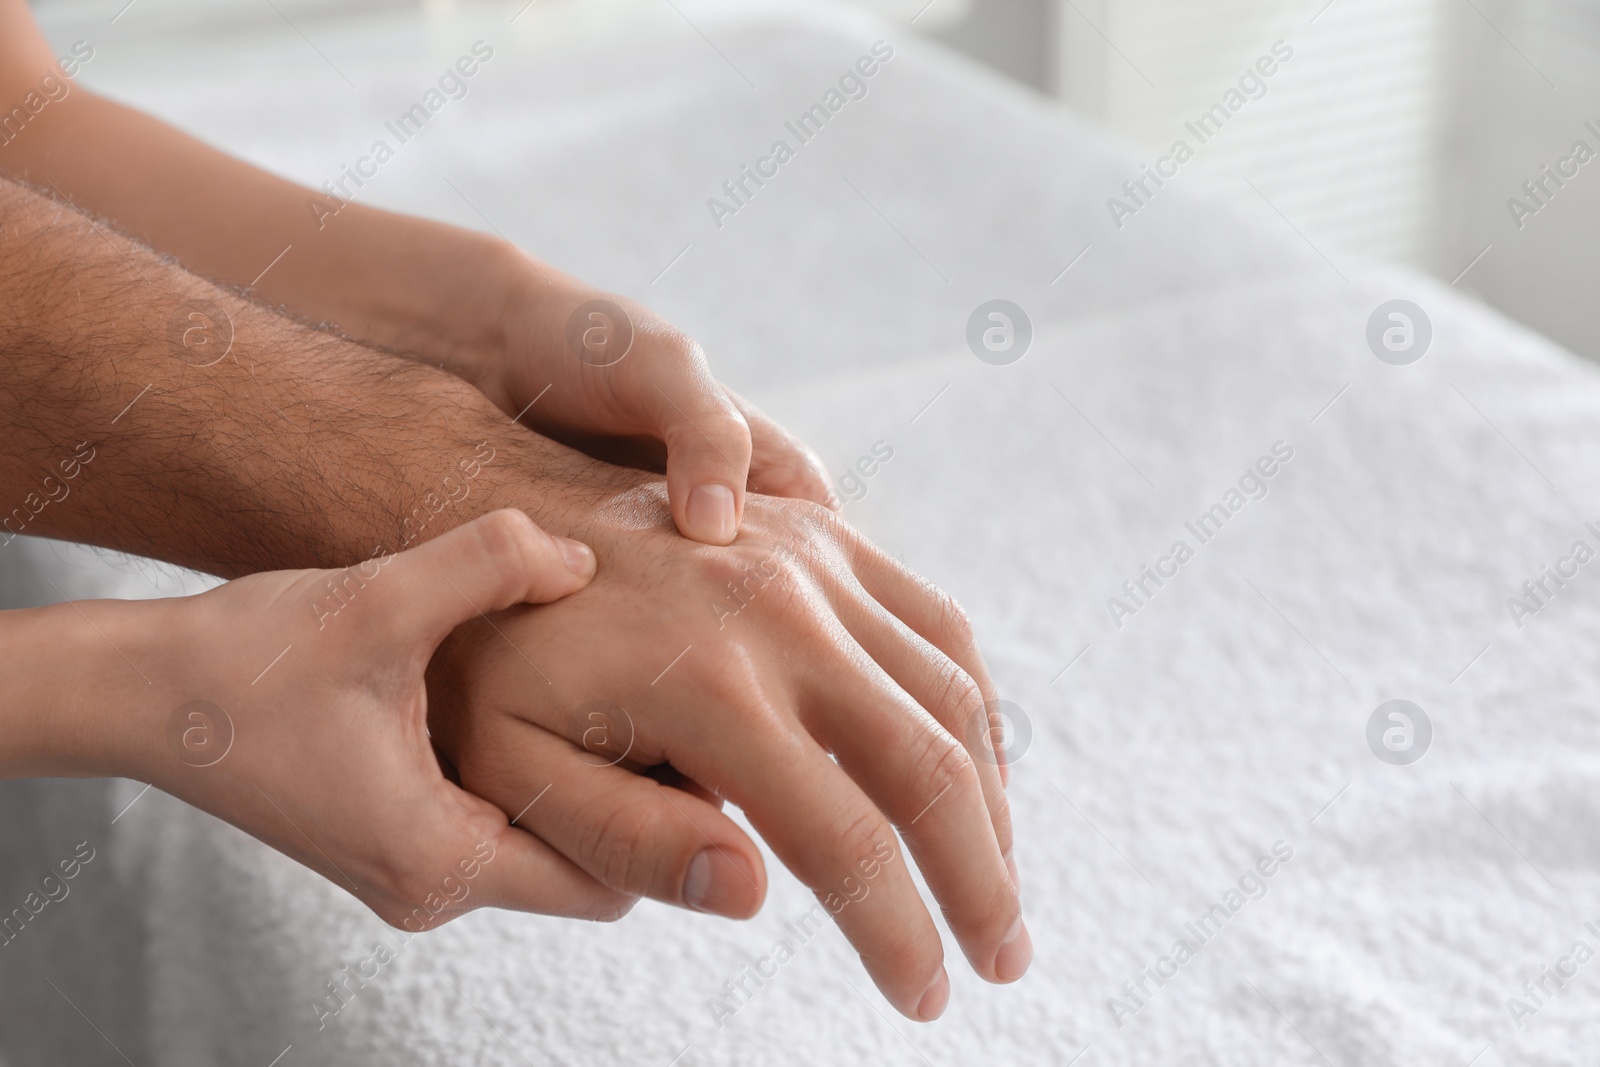 Photo of Man receiving hand massage in wellness center, closeup